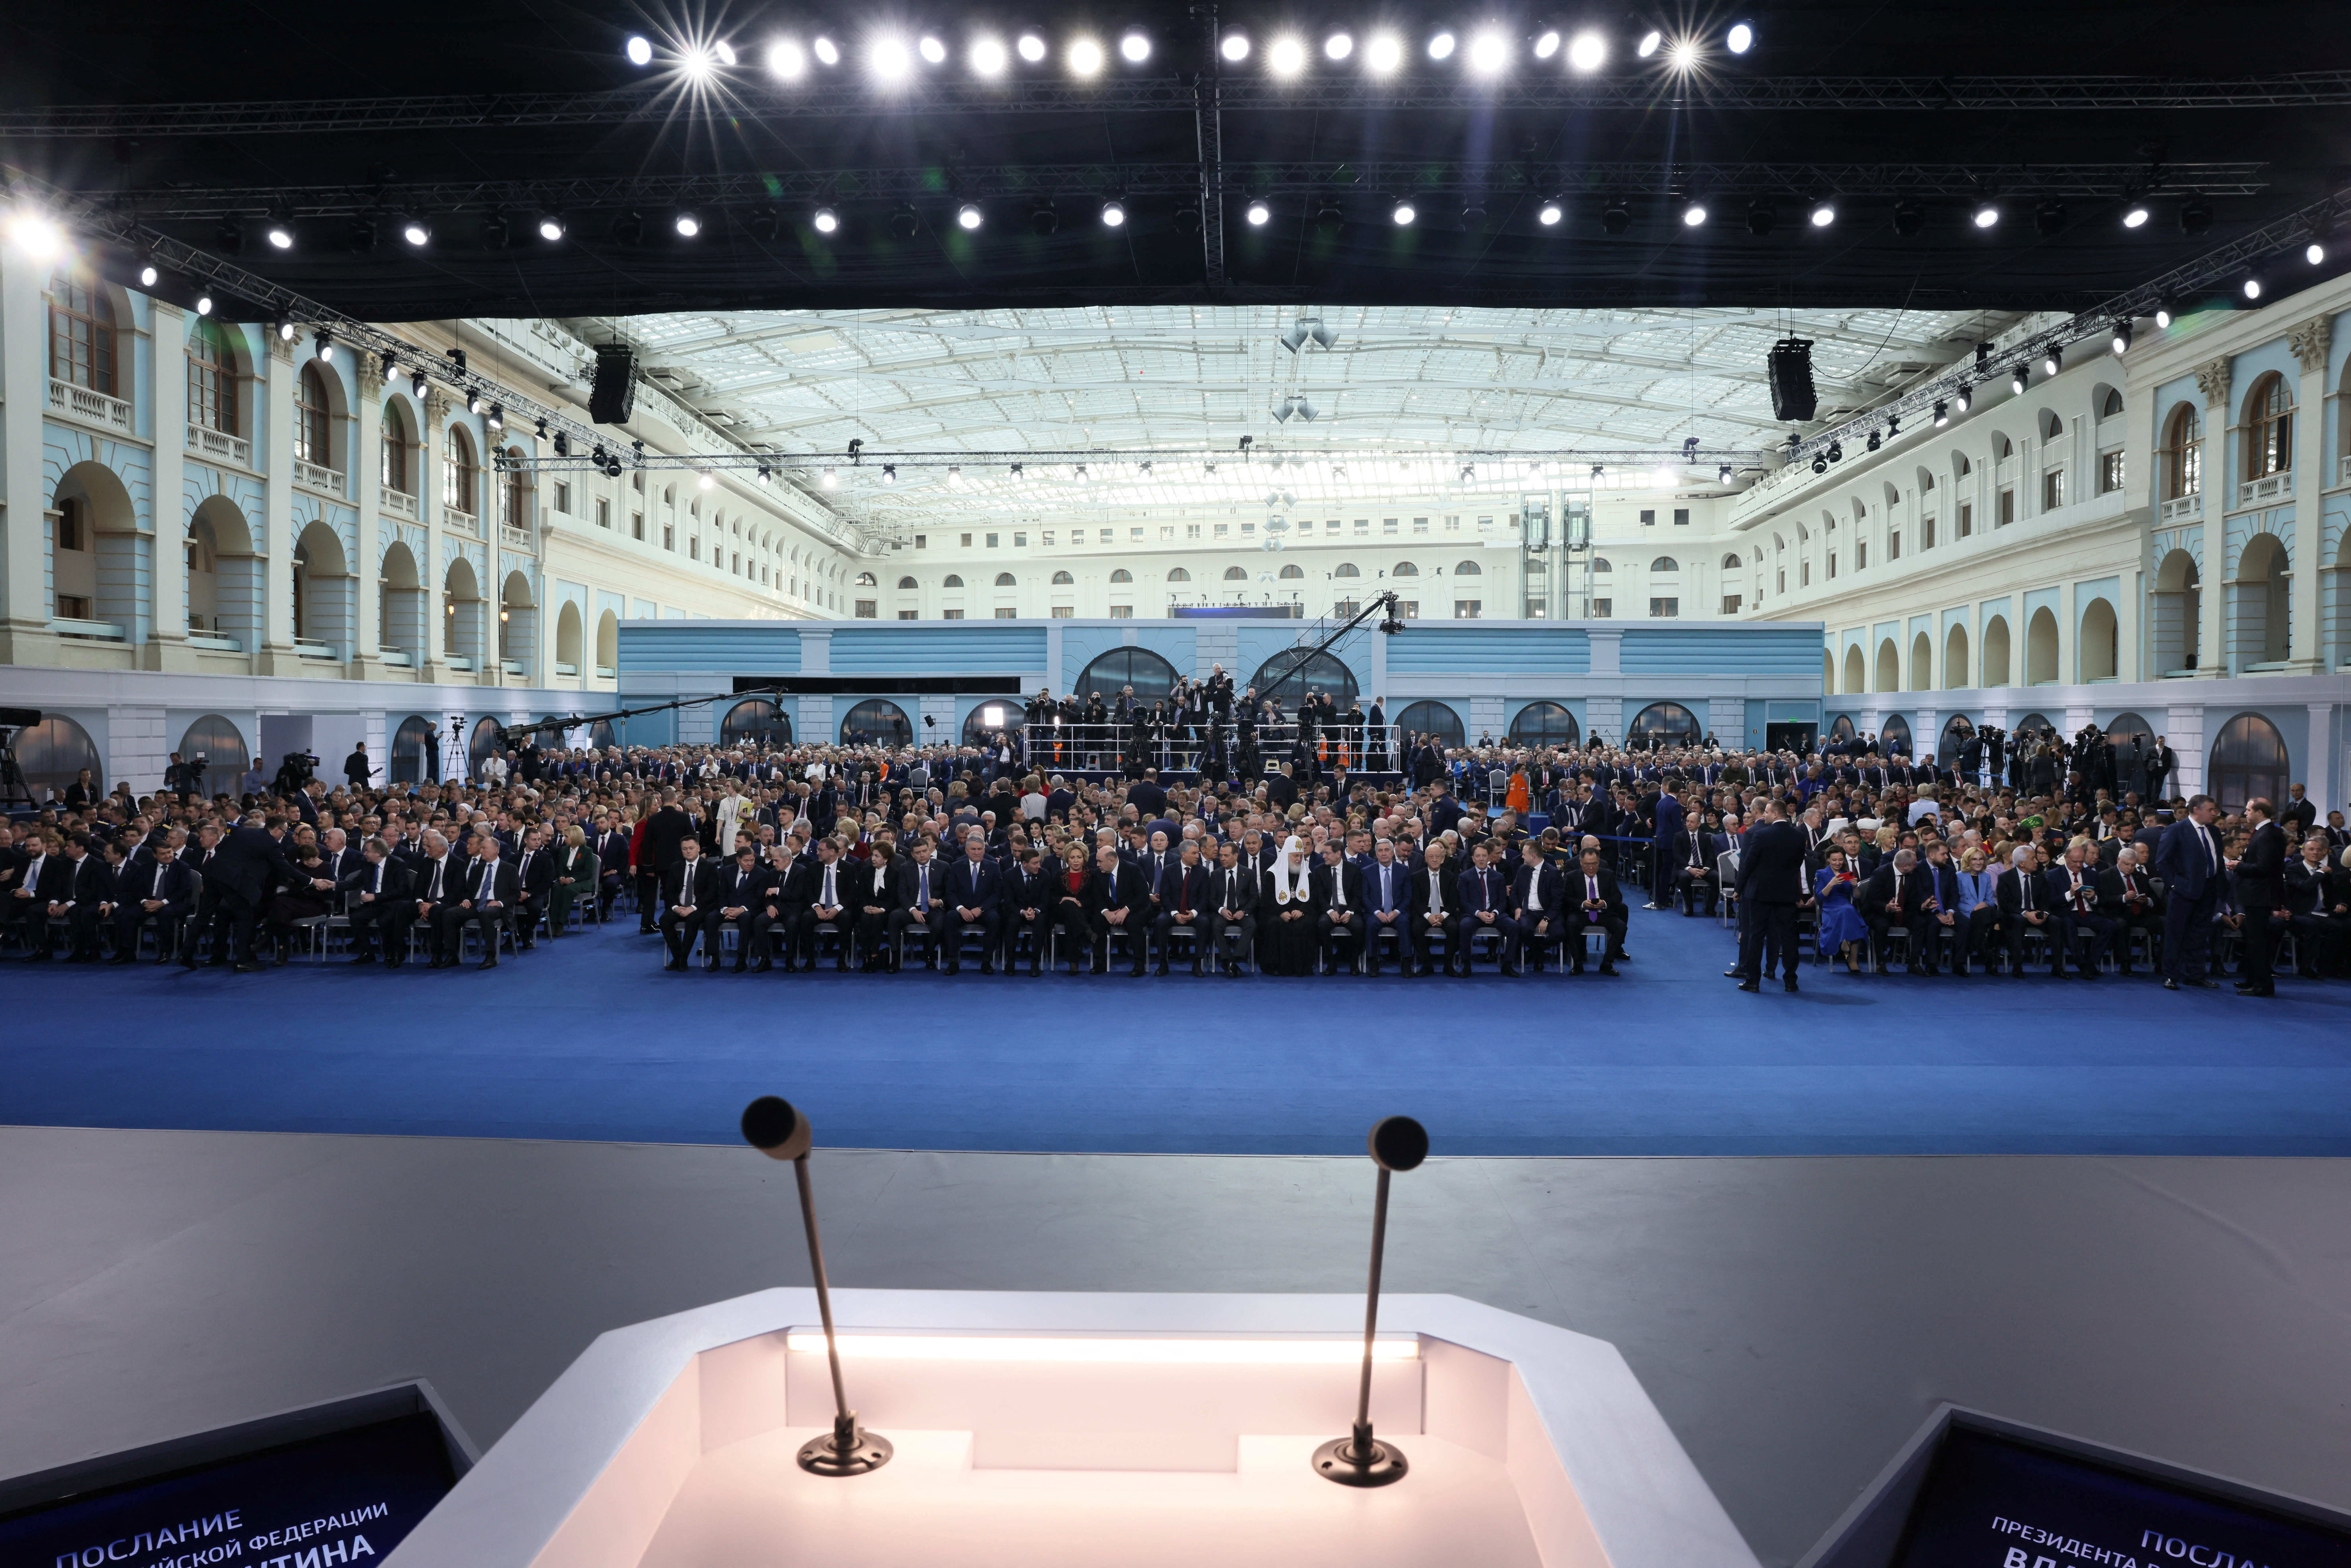 Attendees at Putin's speech (Sputnik/Reuters)